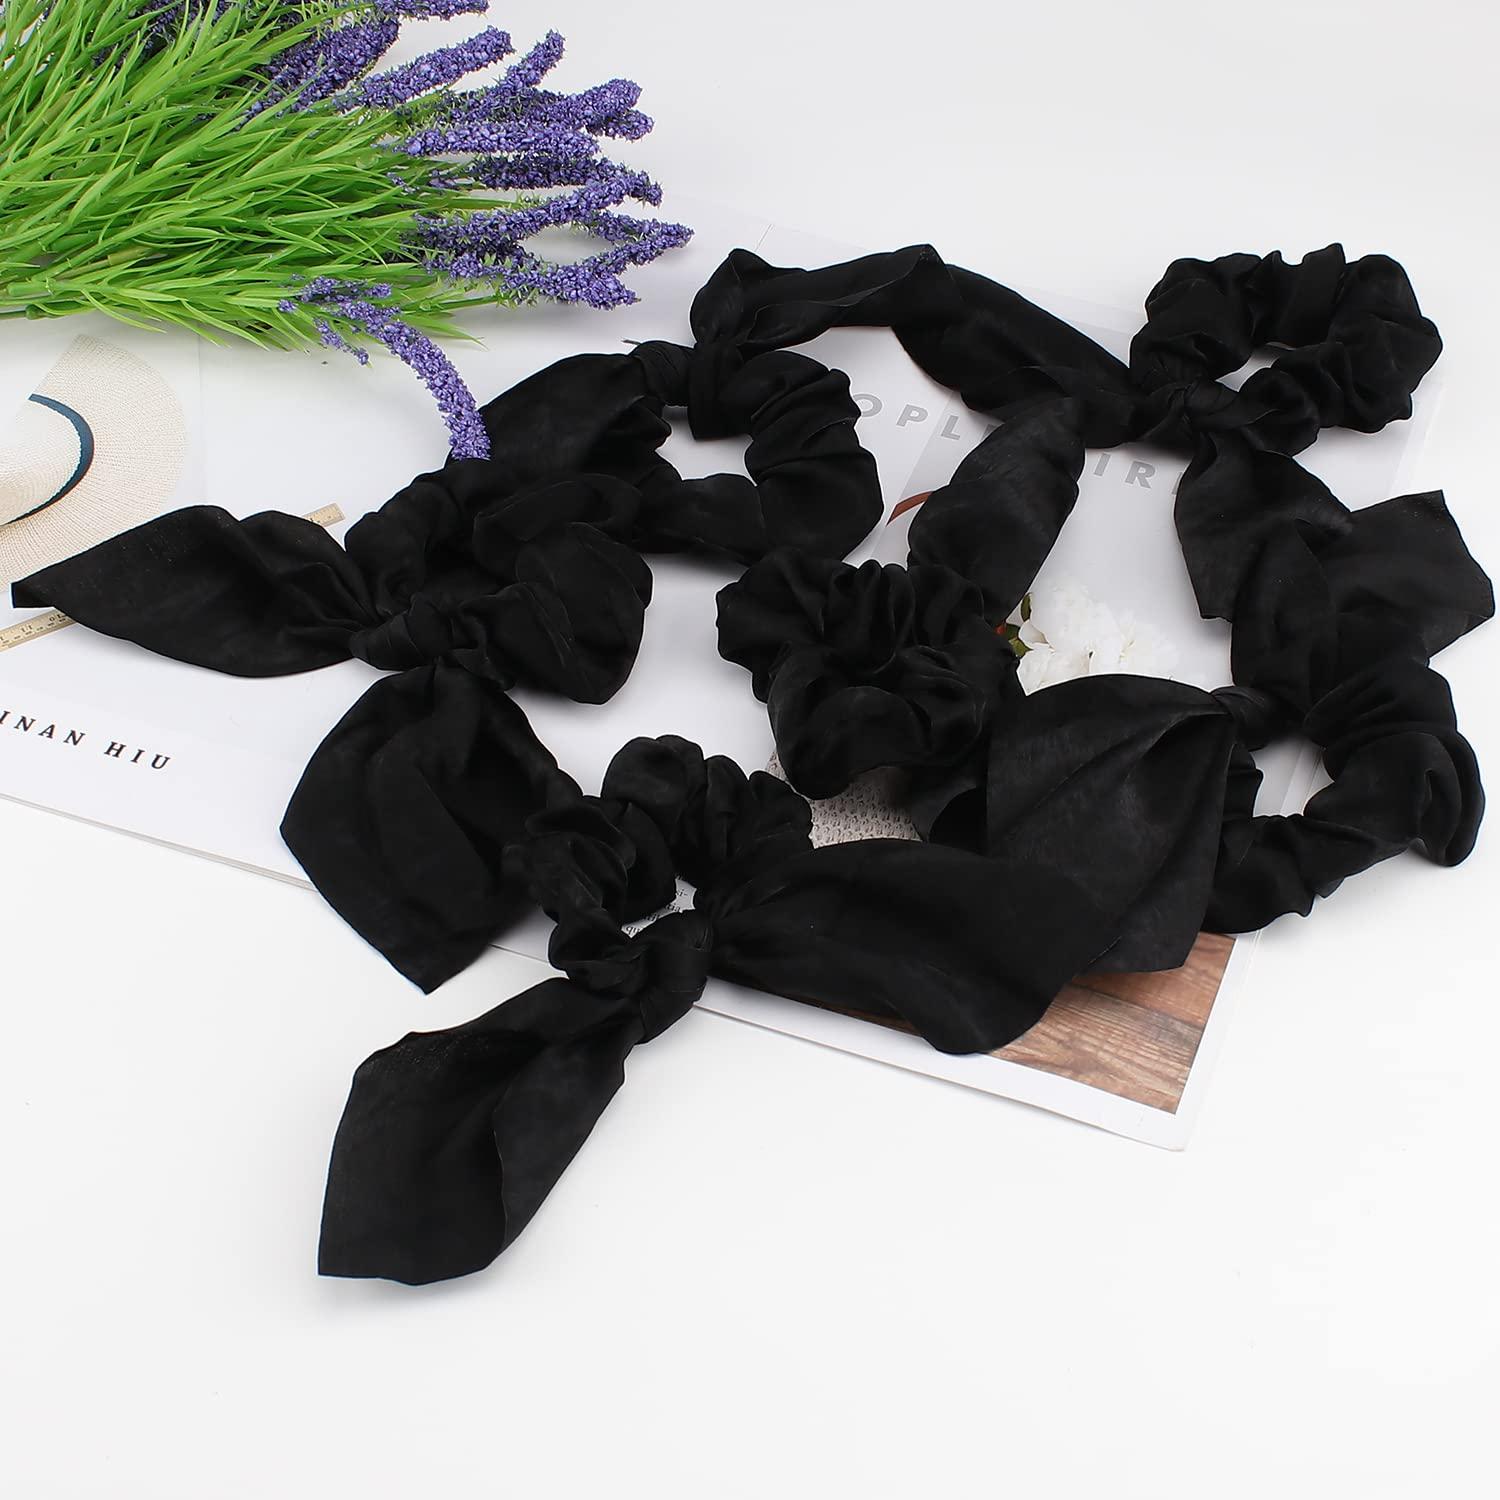 Jaciya Black Hair Ties Silk Bow Scrunchies for Hair Bunny Ears and